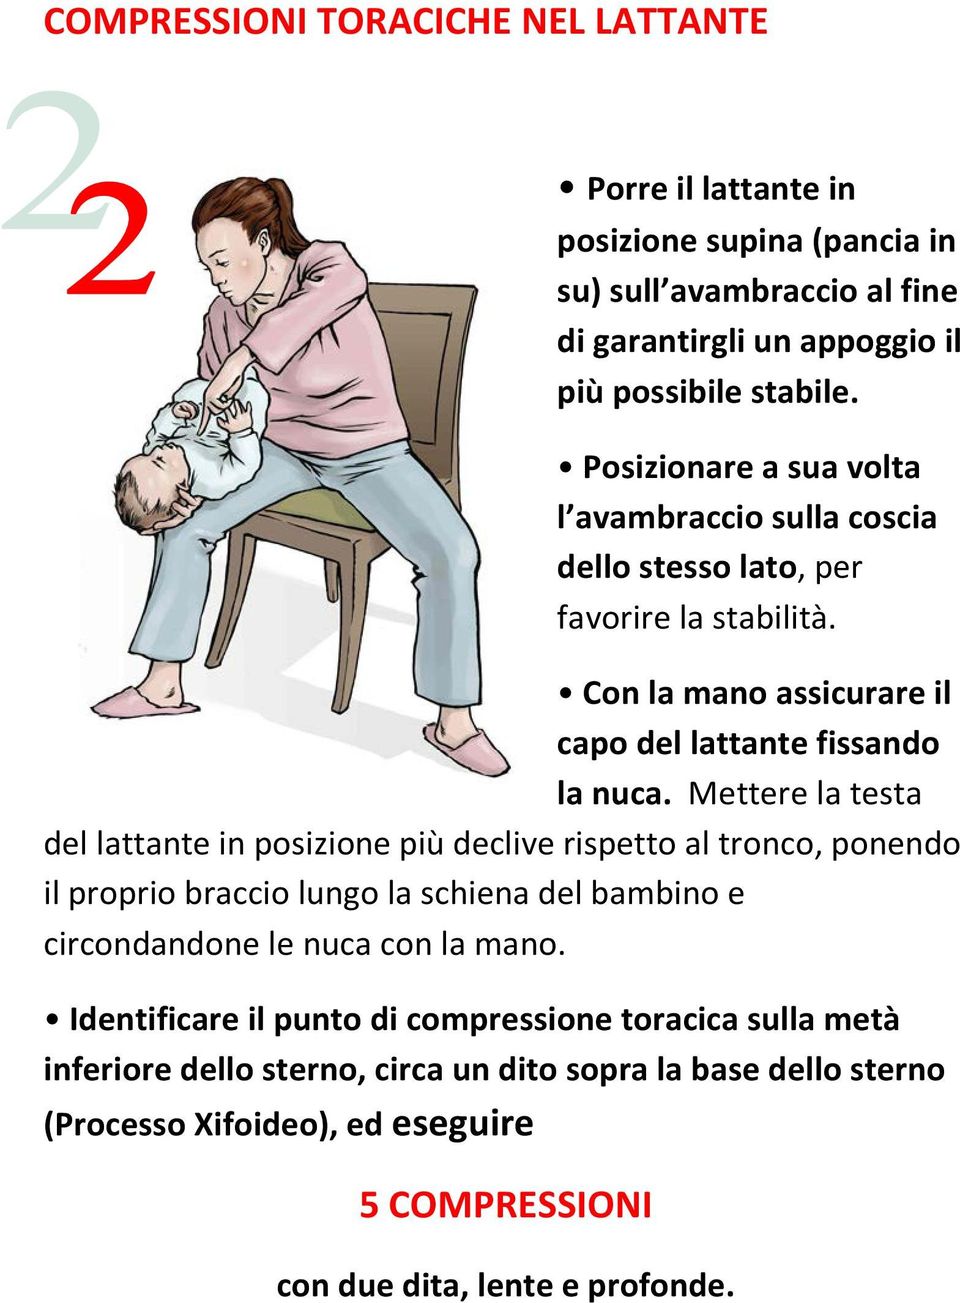 Mettere la testa del lattante in posizione più declive rispetto al tronco, ponendo il proprio braccio lungo la schiena del bambino e circondandone le nuca con la mano.